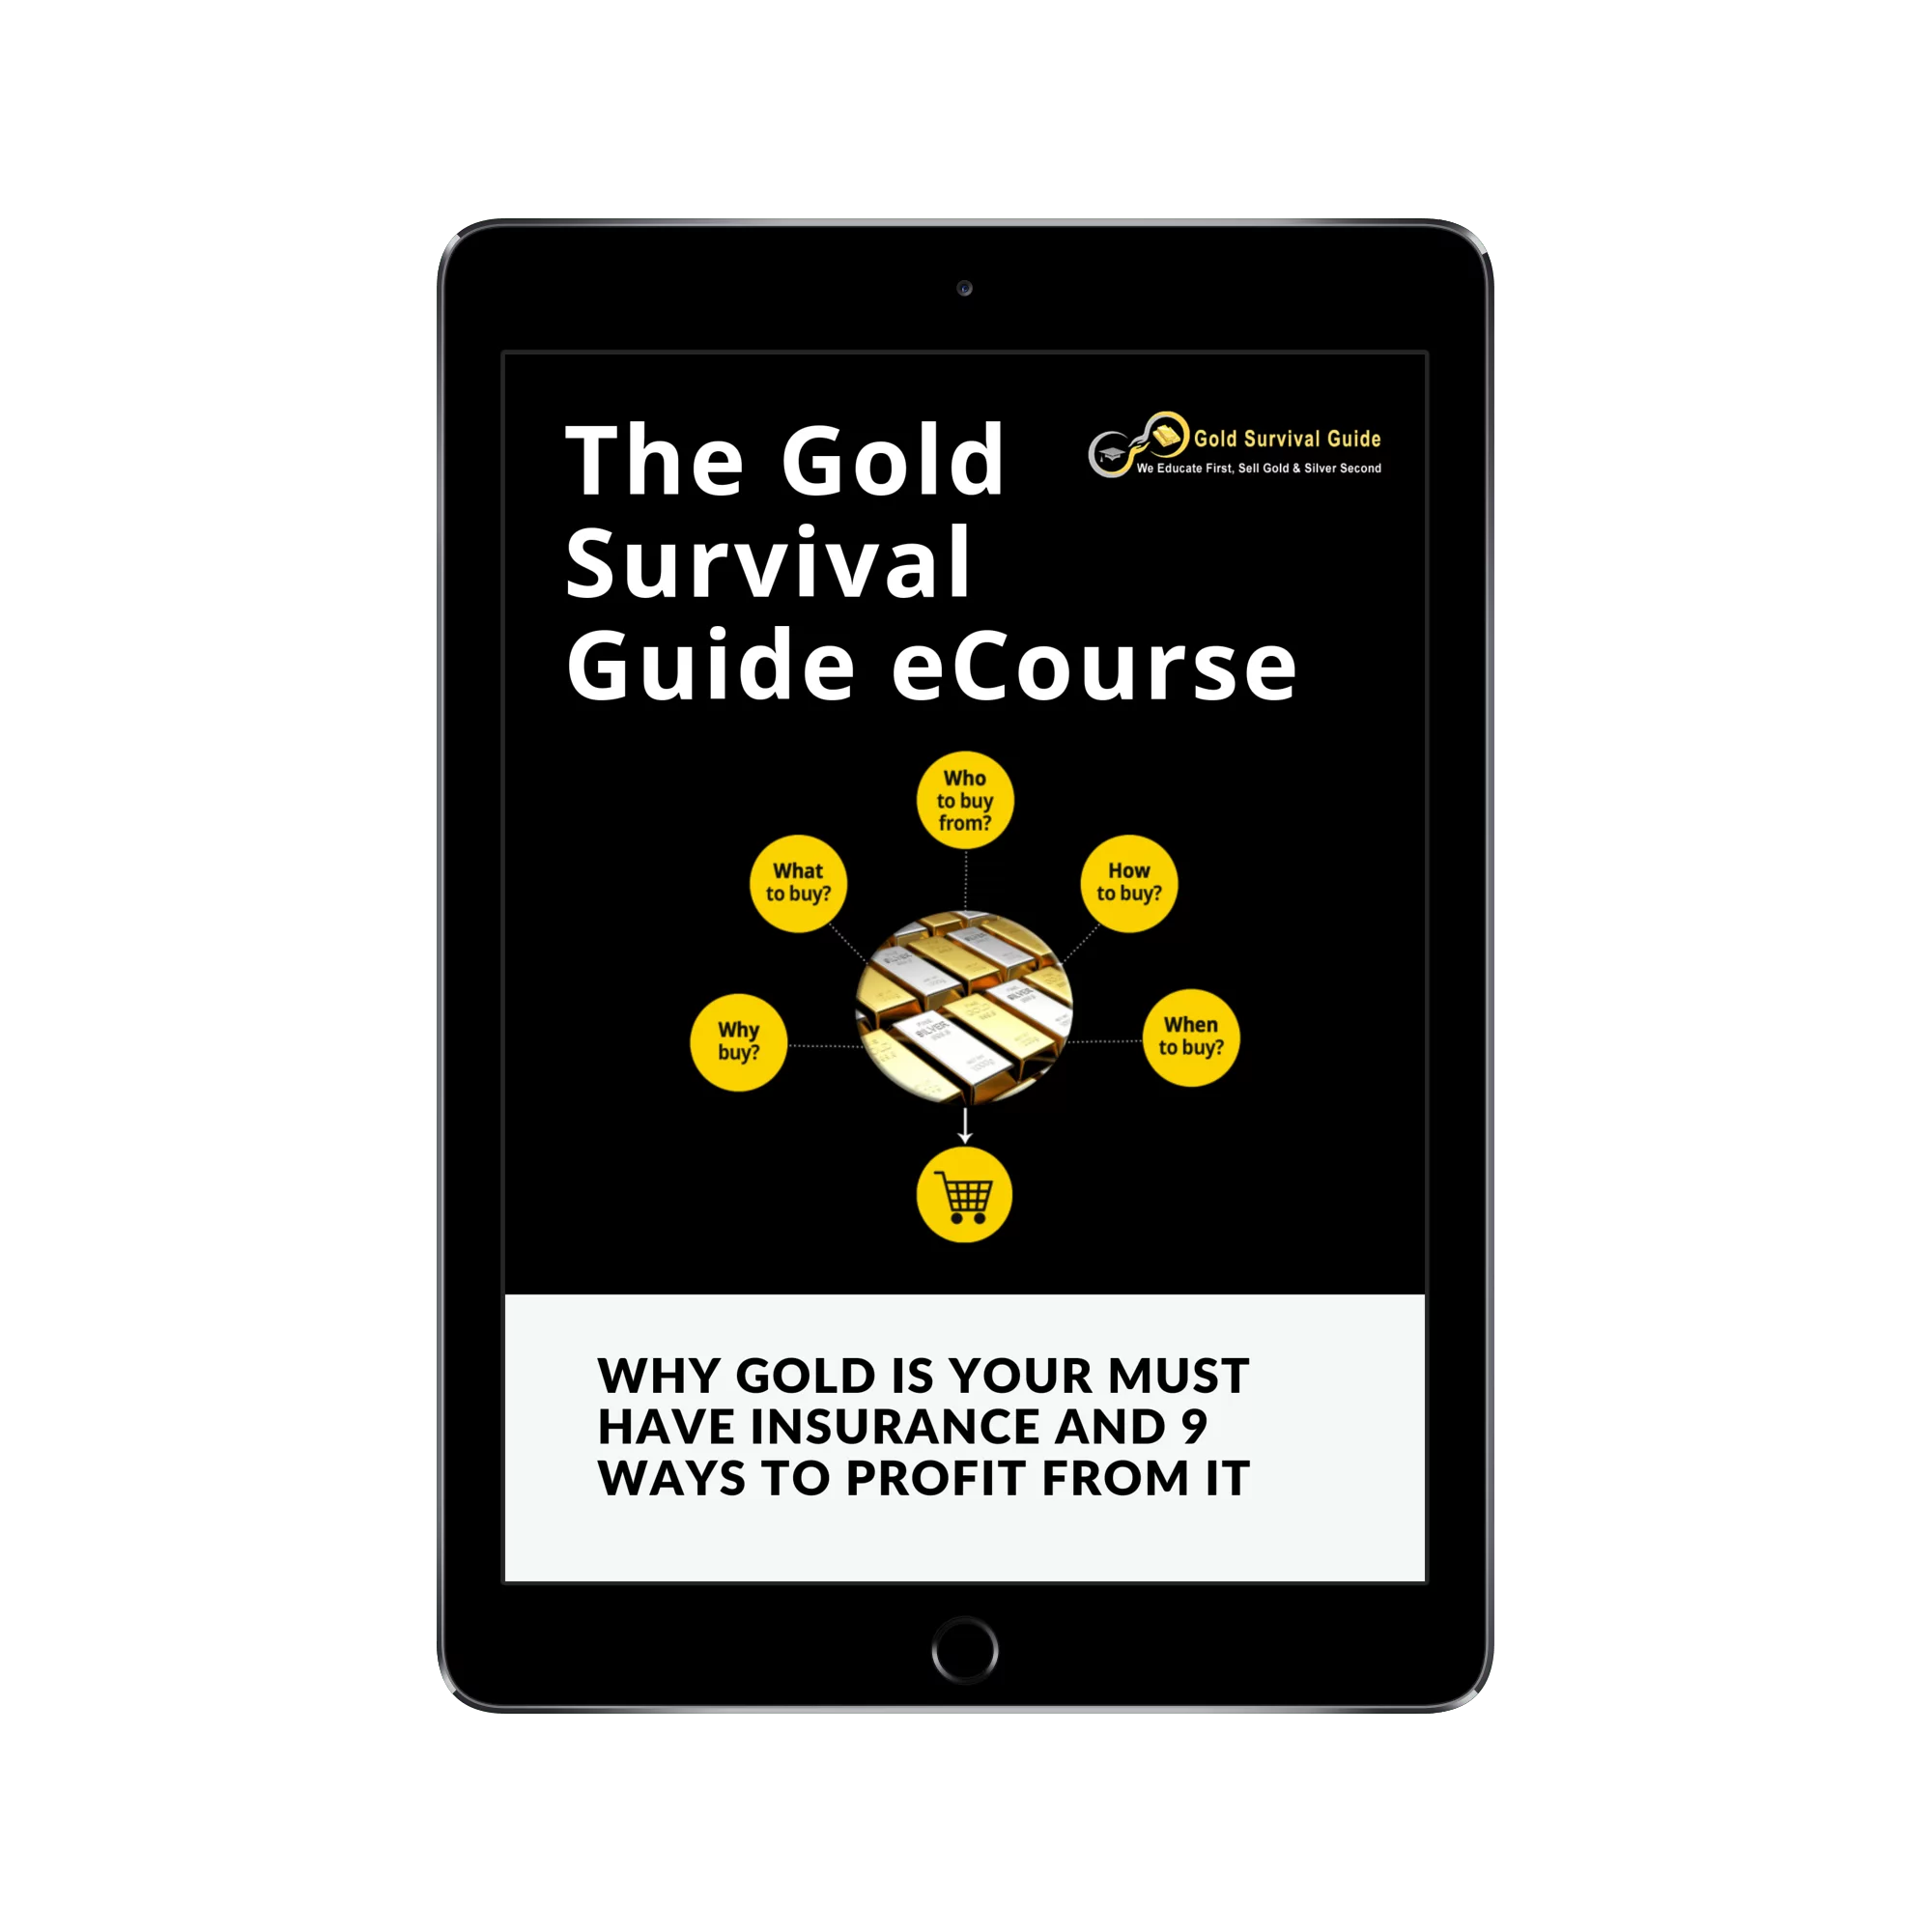 The Gold Survival Guide eCourse